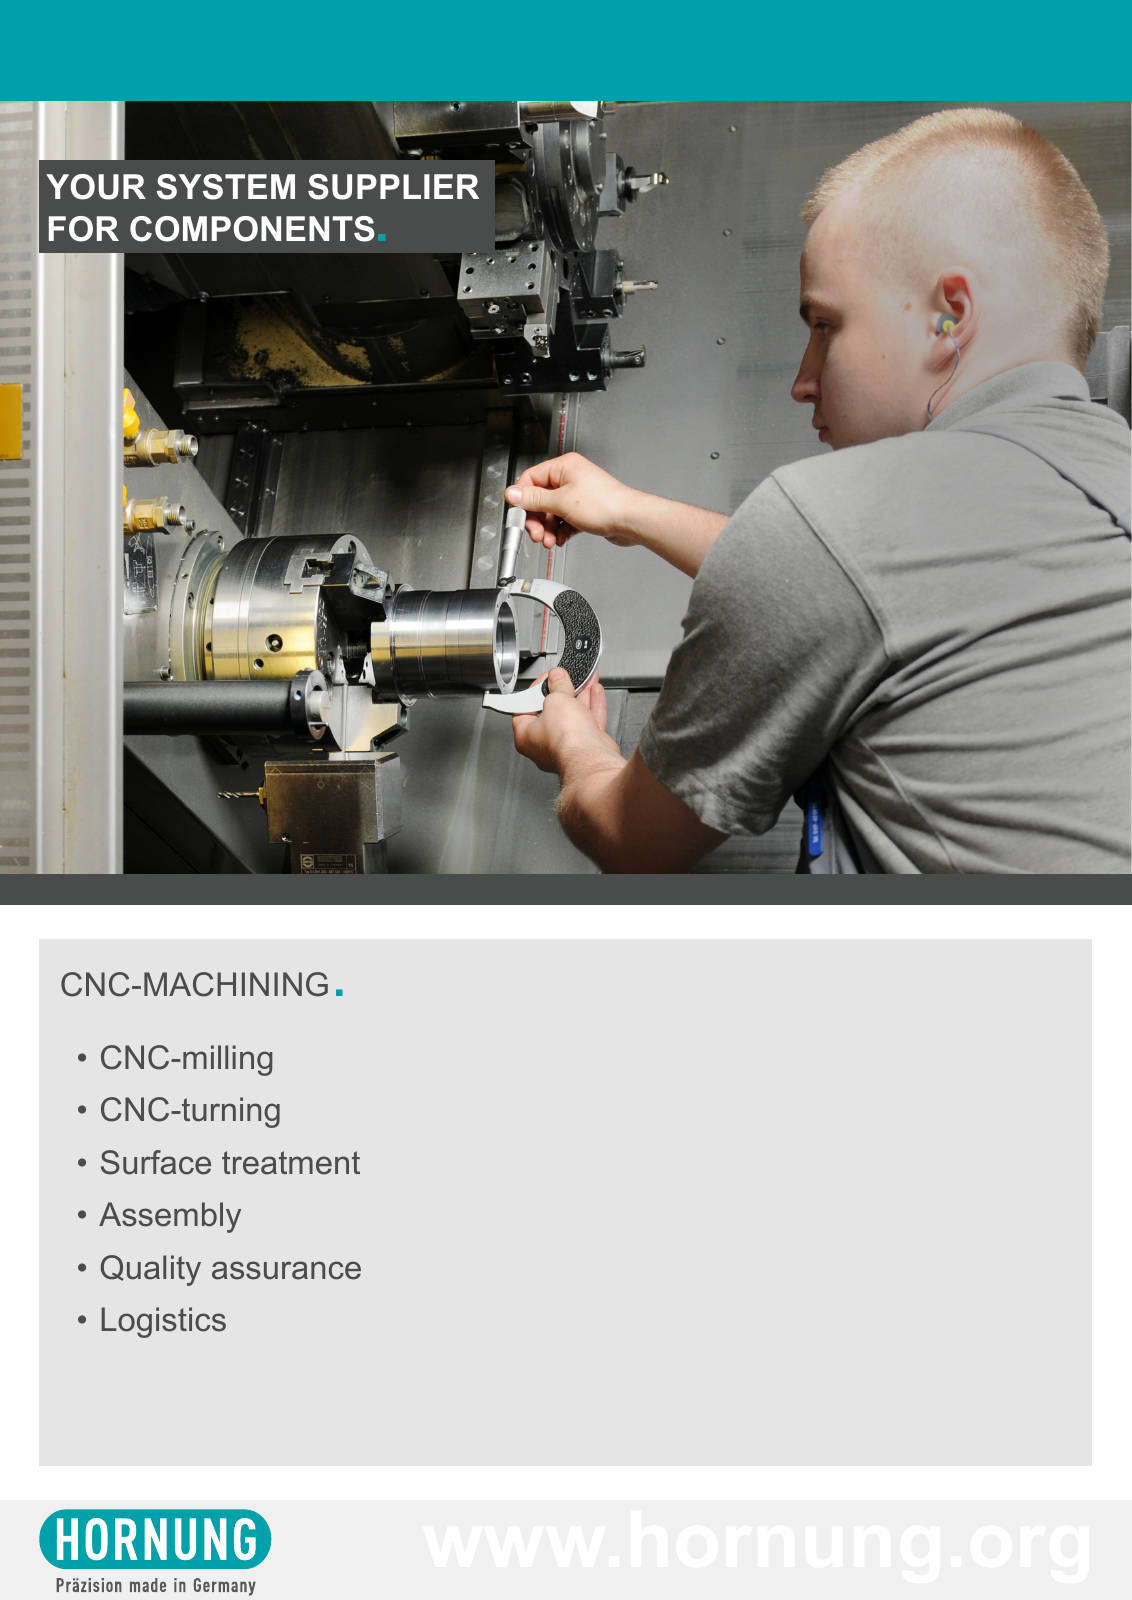 Vorschau Your system supplier for components - Hornung GmbH Seite 3